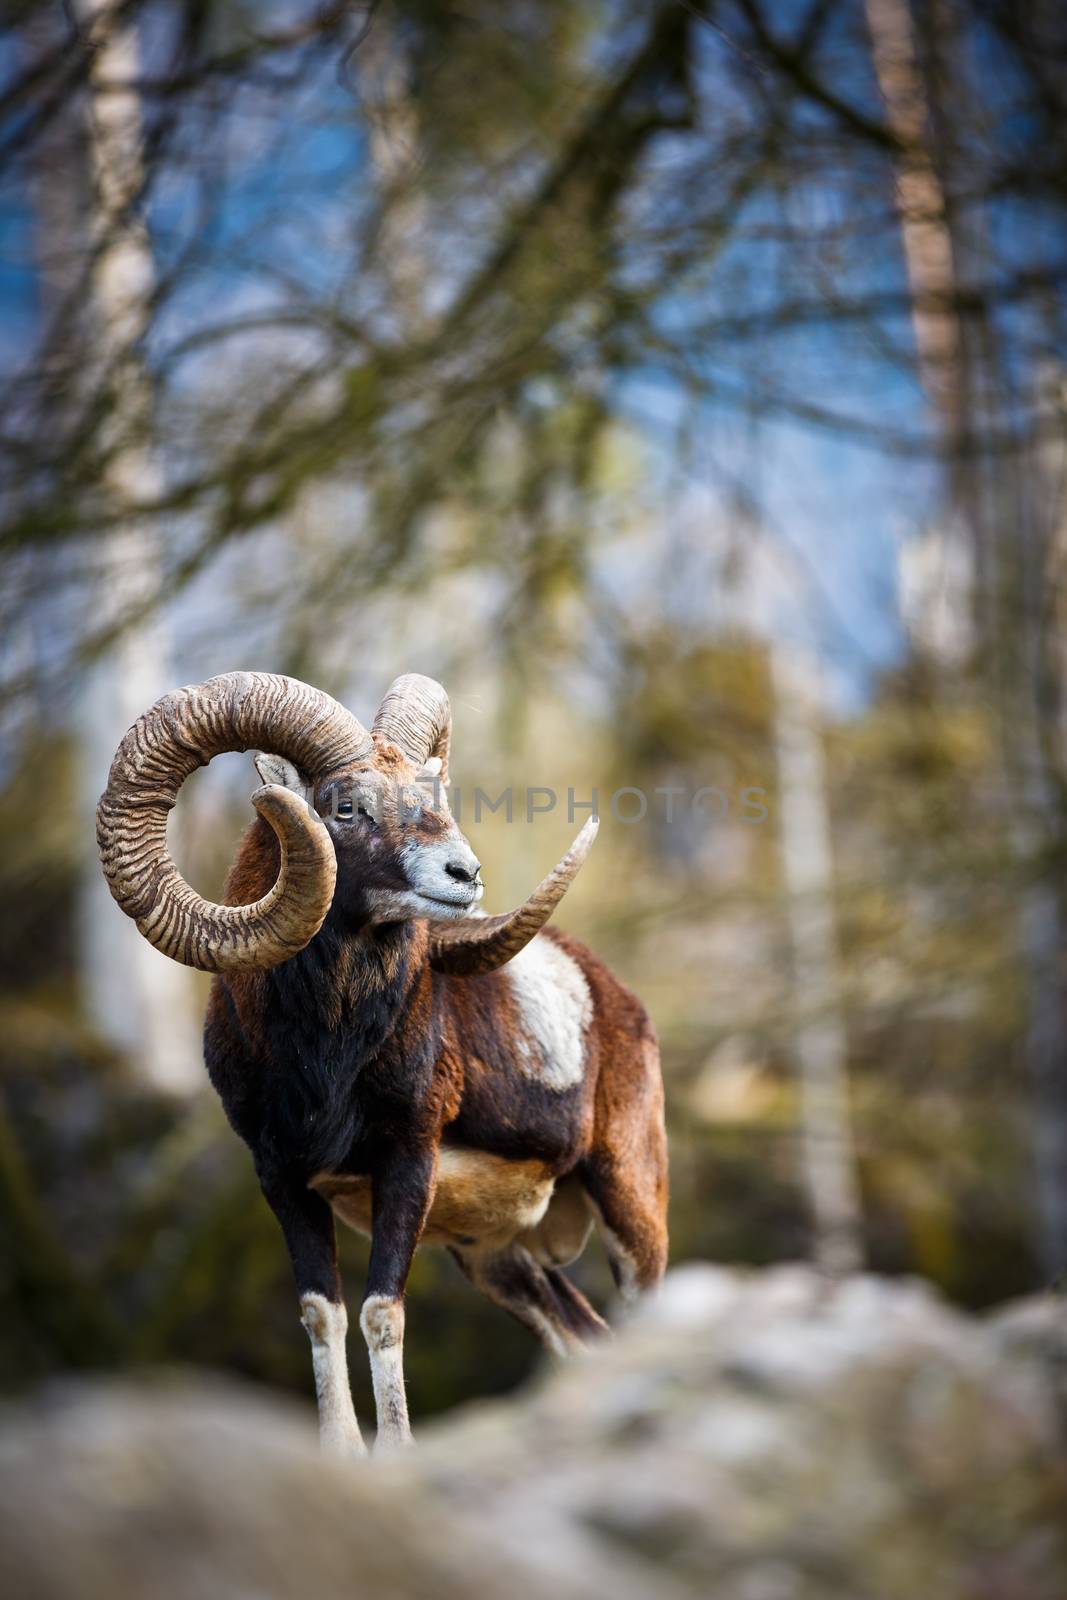 The mouflon (Ovis orientalis) by viktor_cap